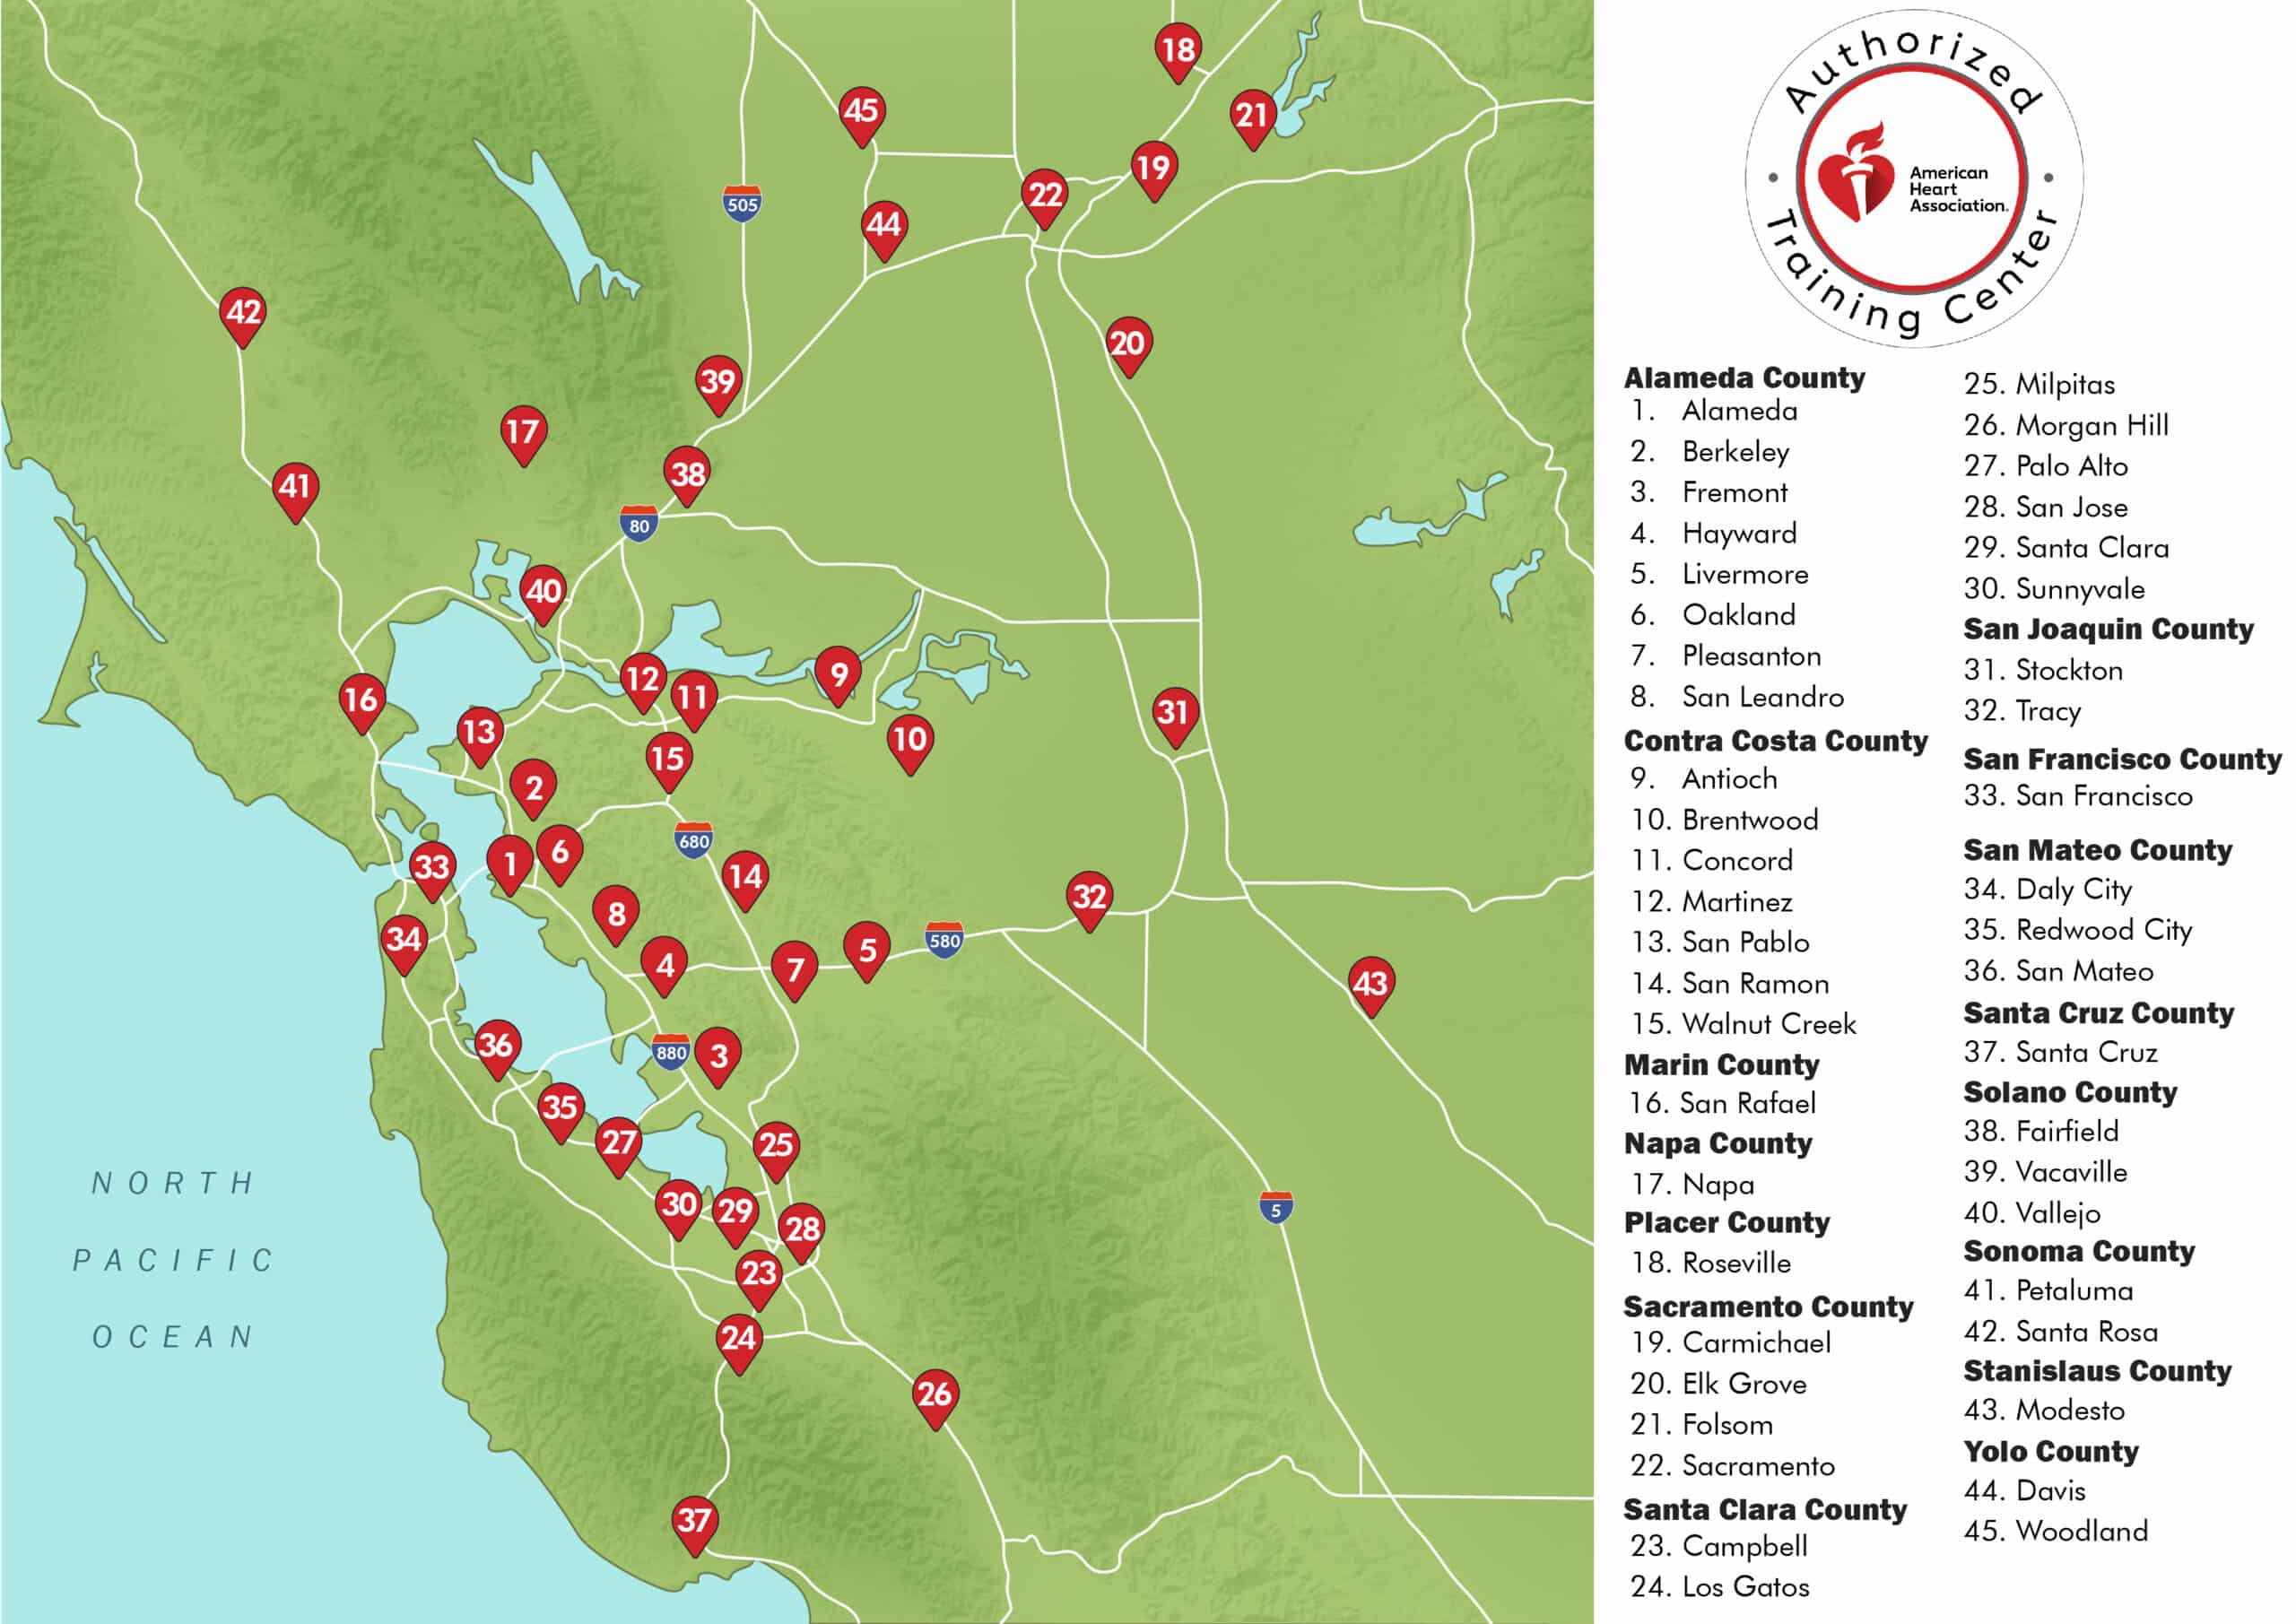 CPR Classes in Livermore, CA